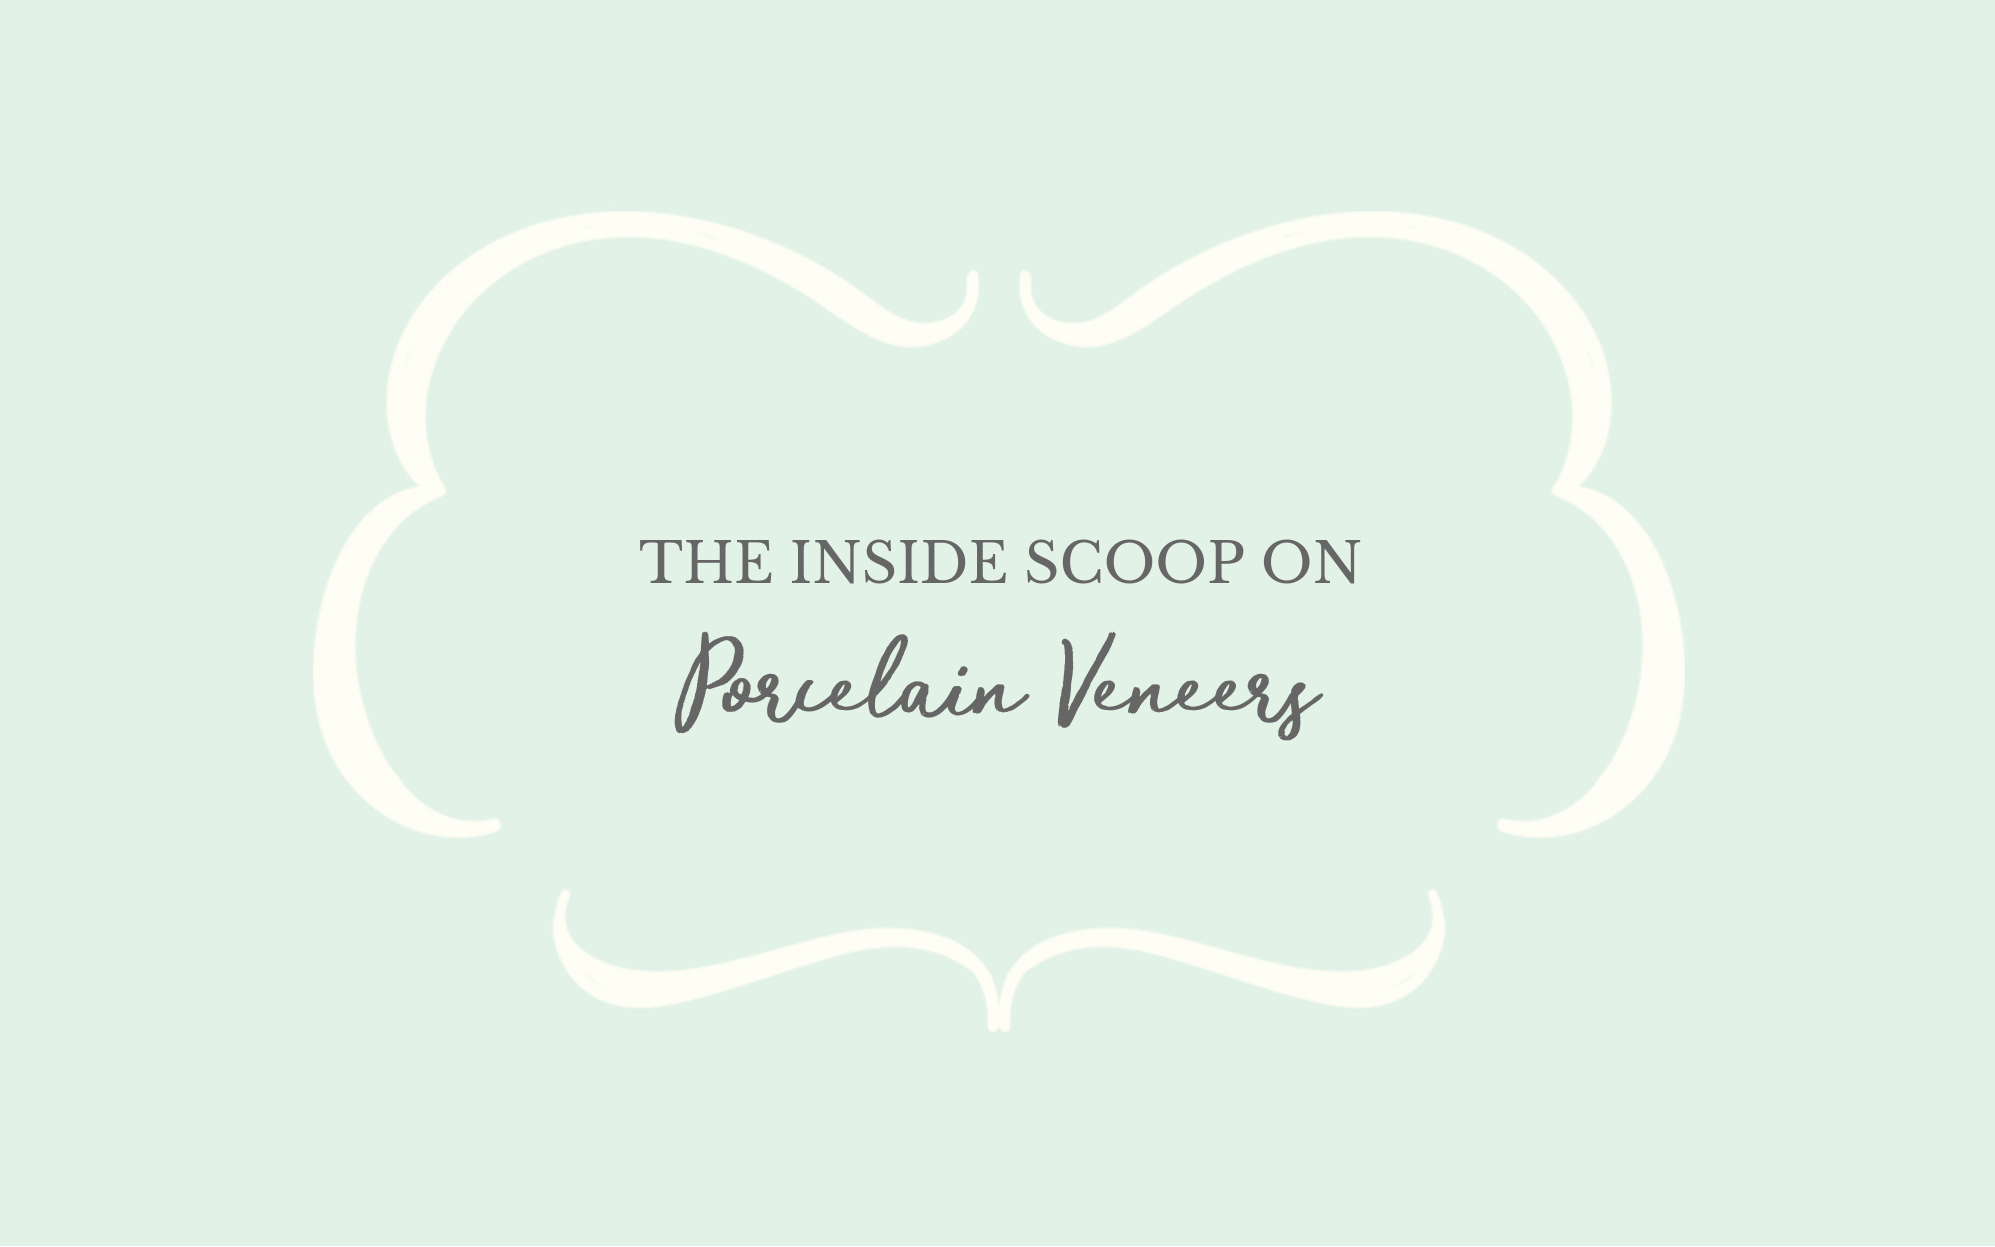 The Inside Scoop on Porcelain Veneers